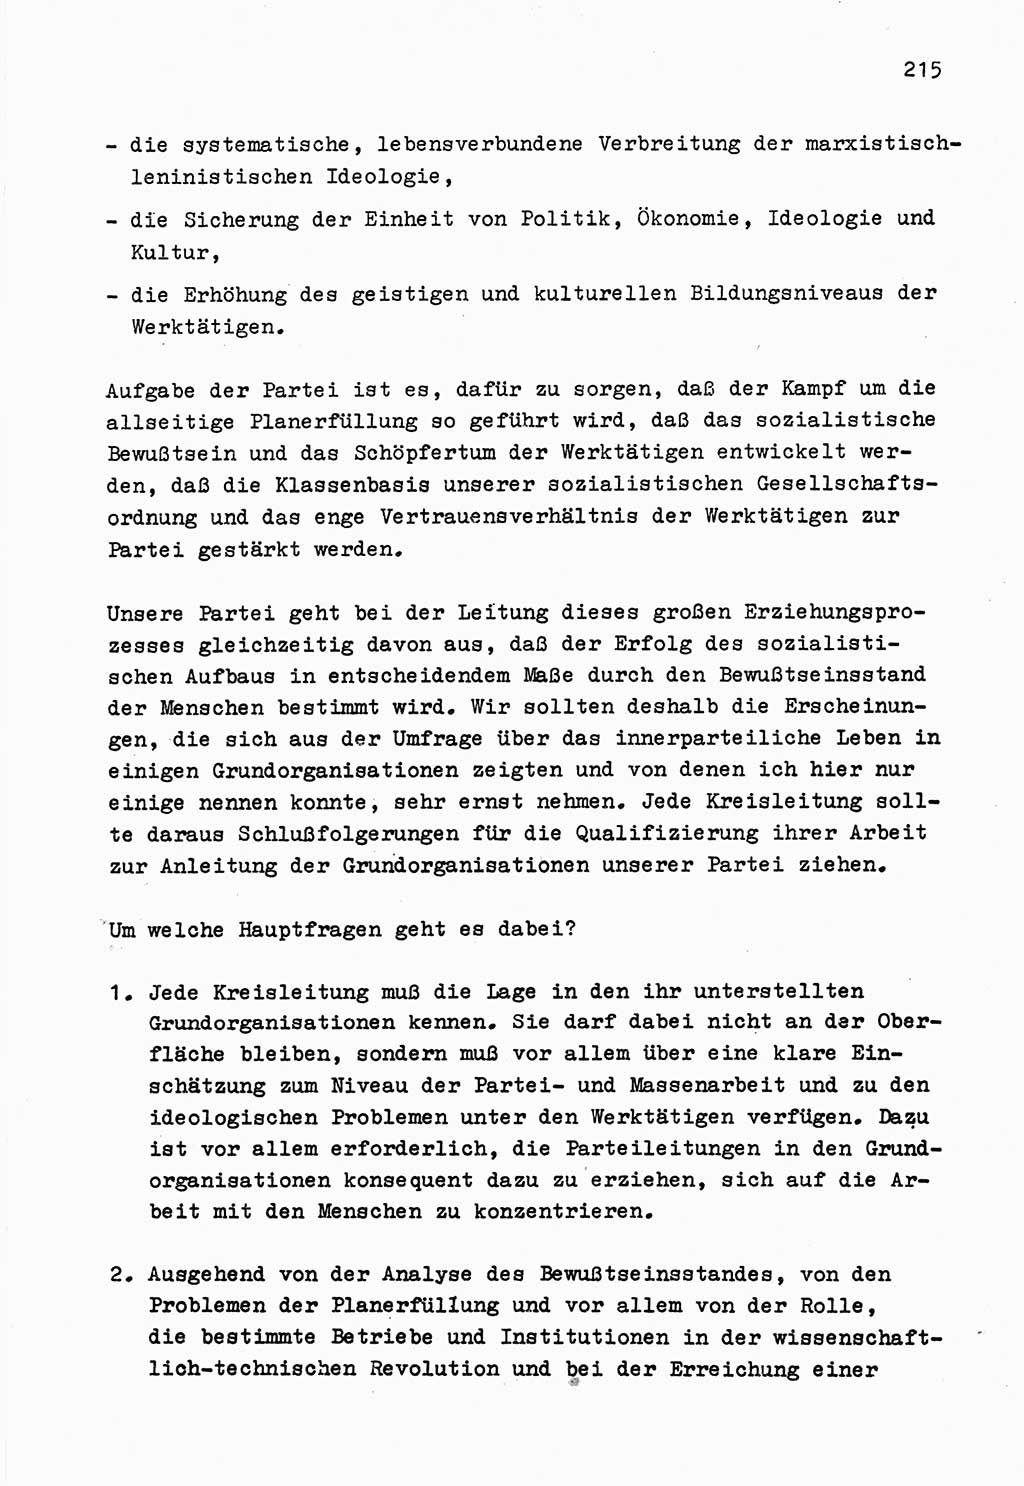 Zu Fragen der Parteiarbeit [Sozialistische Einheitspartei Deutschlands (SED) Deutsche Demokratische Republik (DDR)] 1979, Seite 215 (Fr. PA SED DDR 1979, S. 215)